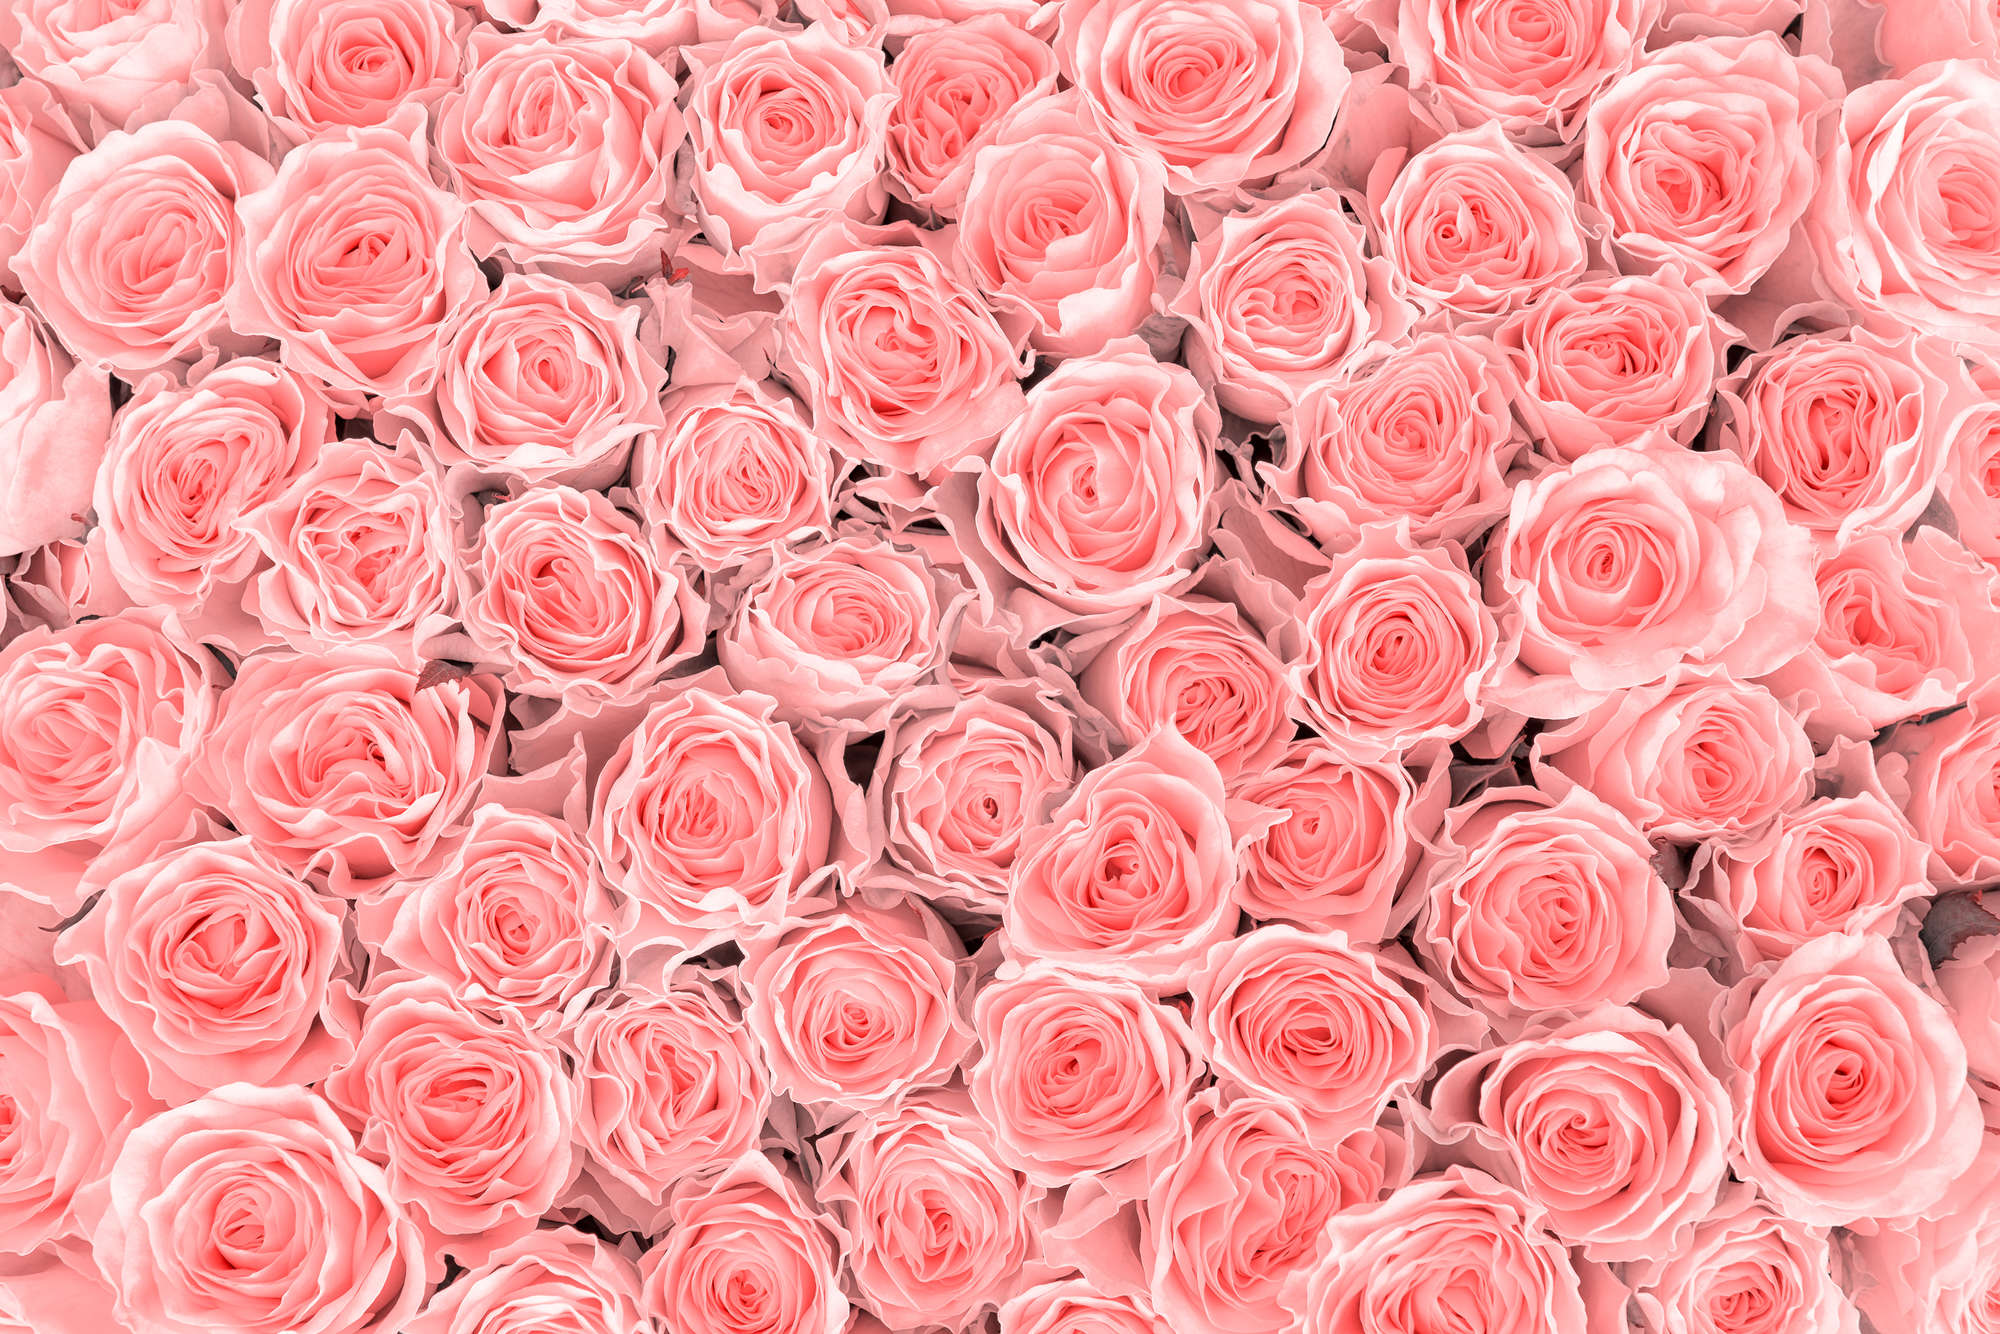             Mural de plantas rosas sobre vellón liso nacarado
        